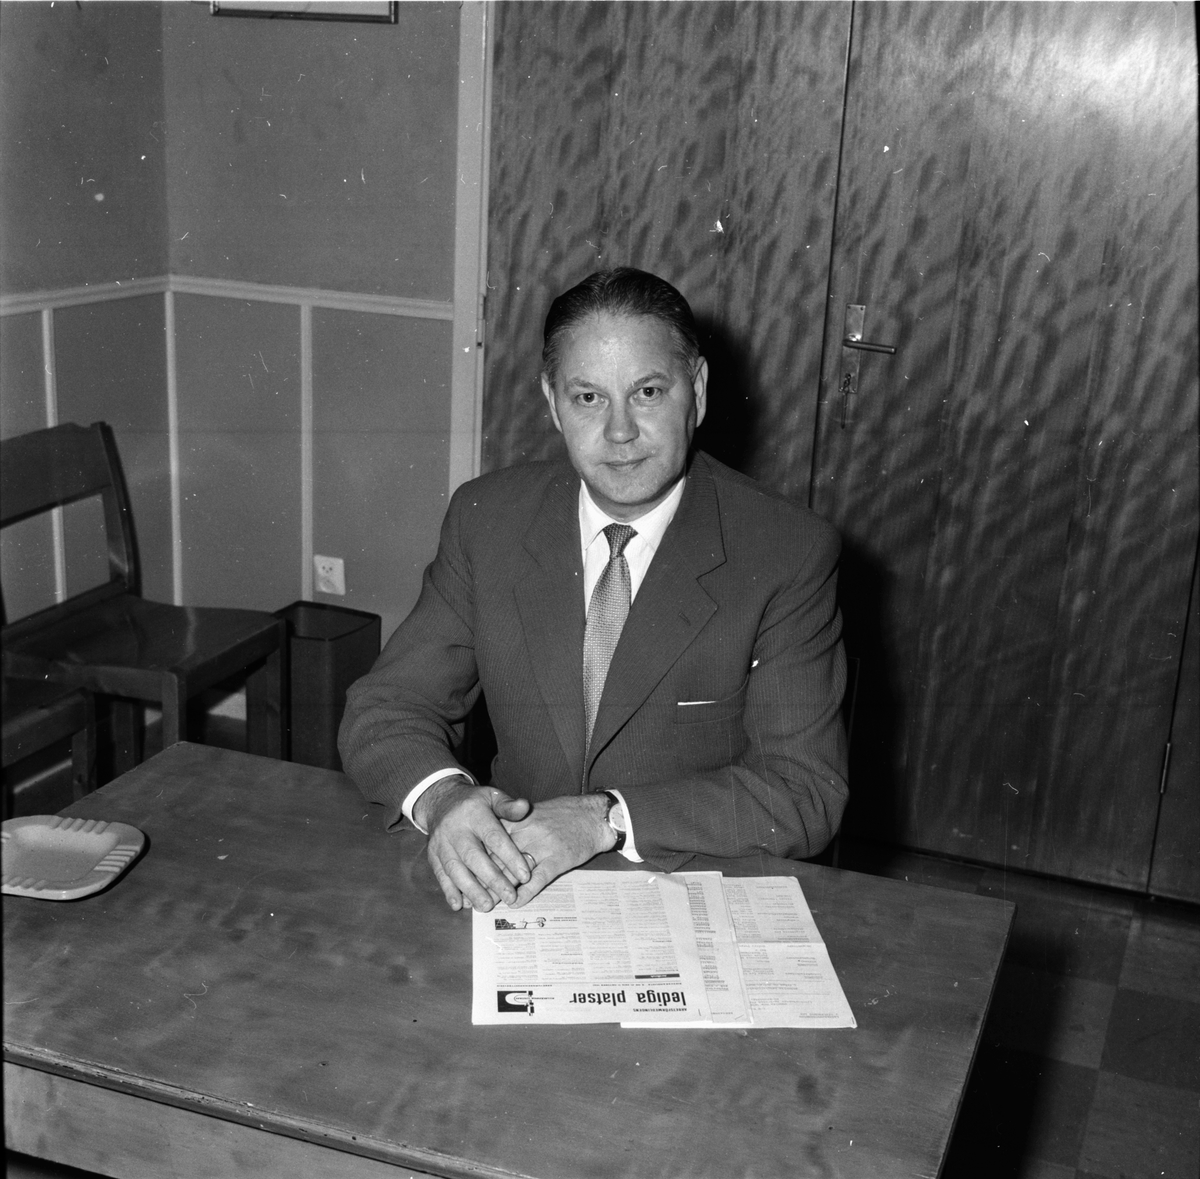 Arbetsförmedlare Gösta Westin.
Ockelbo 24/10 1961